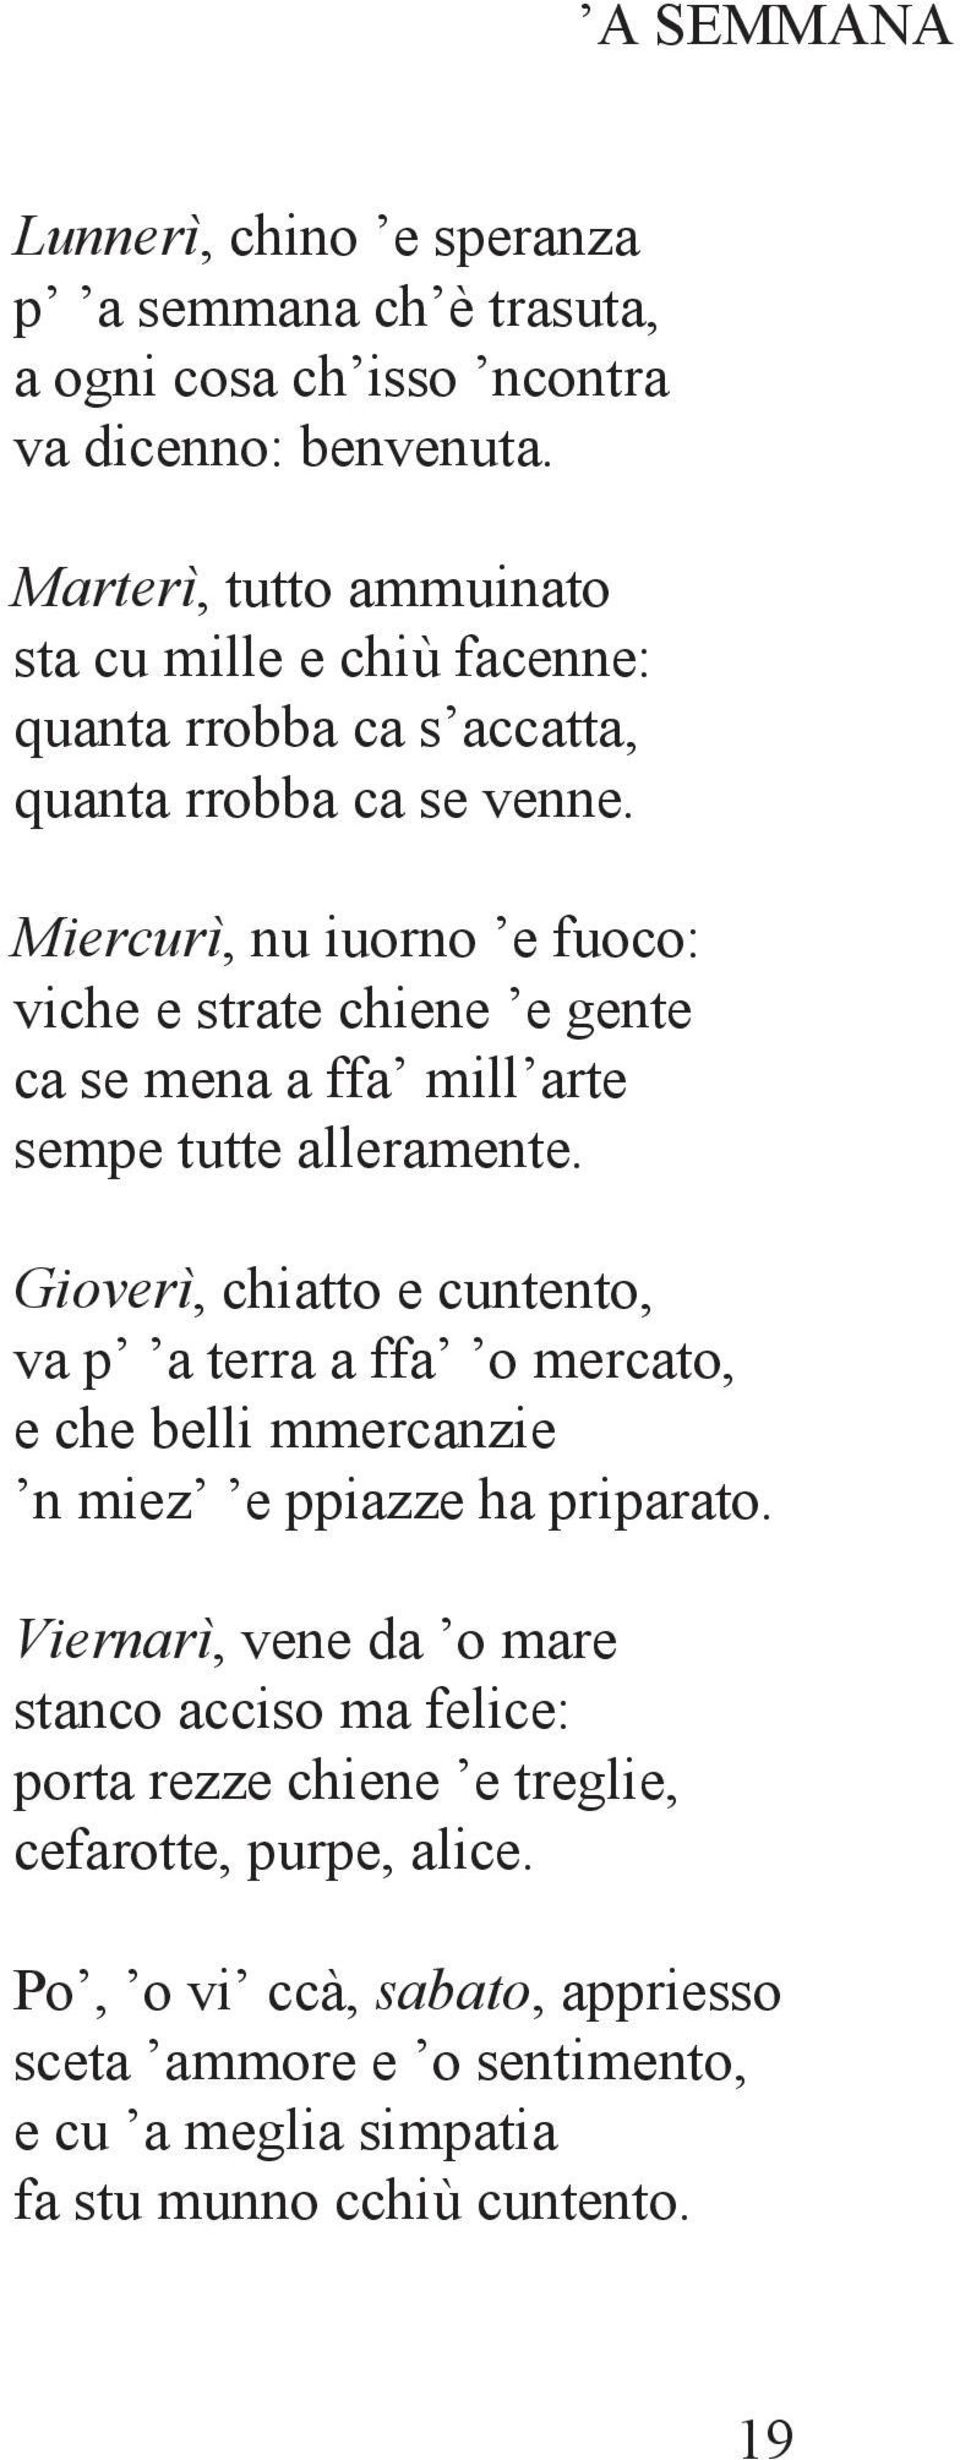 Dialetto Napoletano Poesie Di Natale In Napoletano.Poesie Napoletane Per Le Scuole Elementari E Medie Pdf Free Download